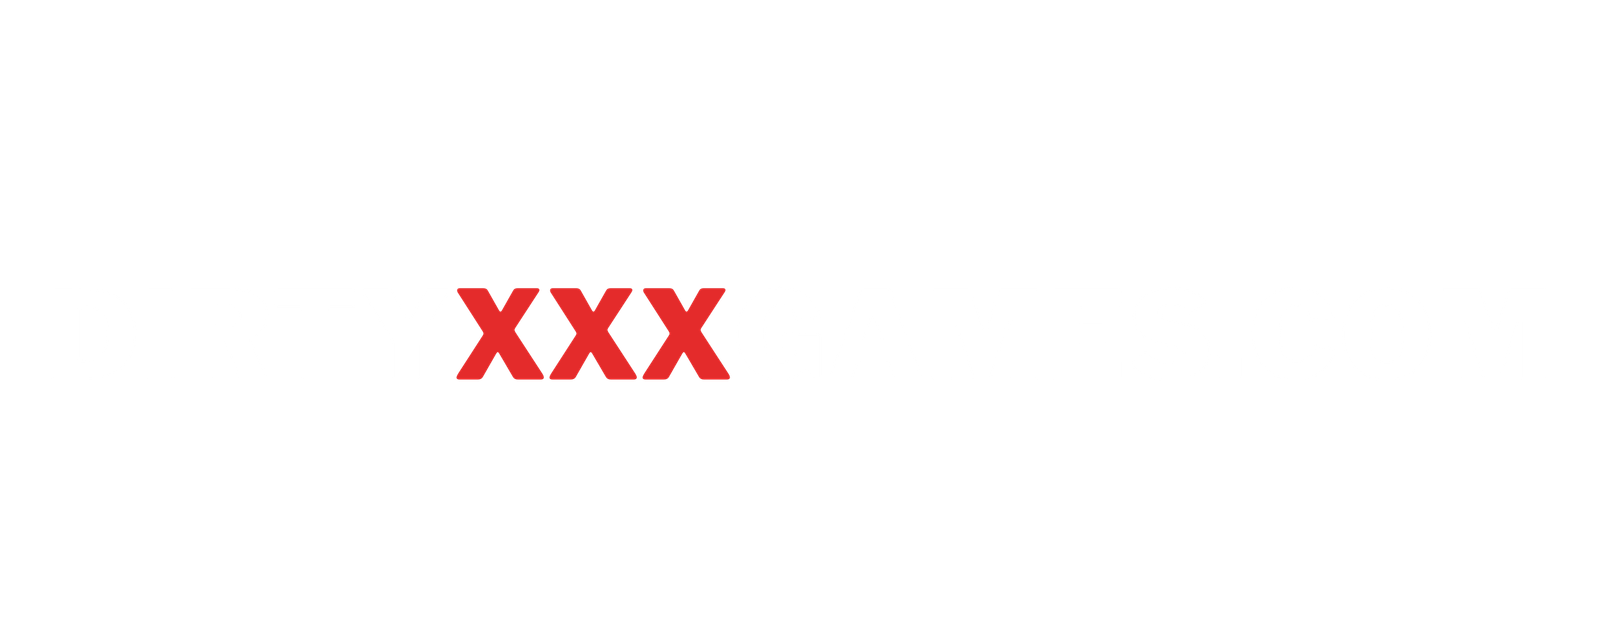 DirtyXXXgames.com